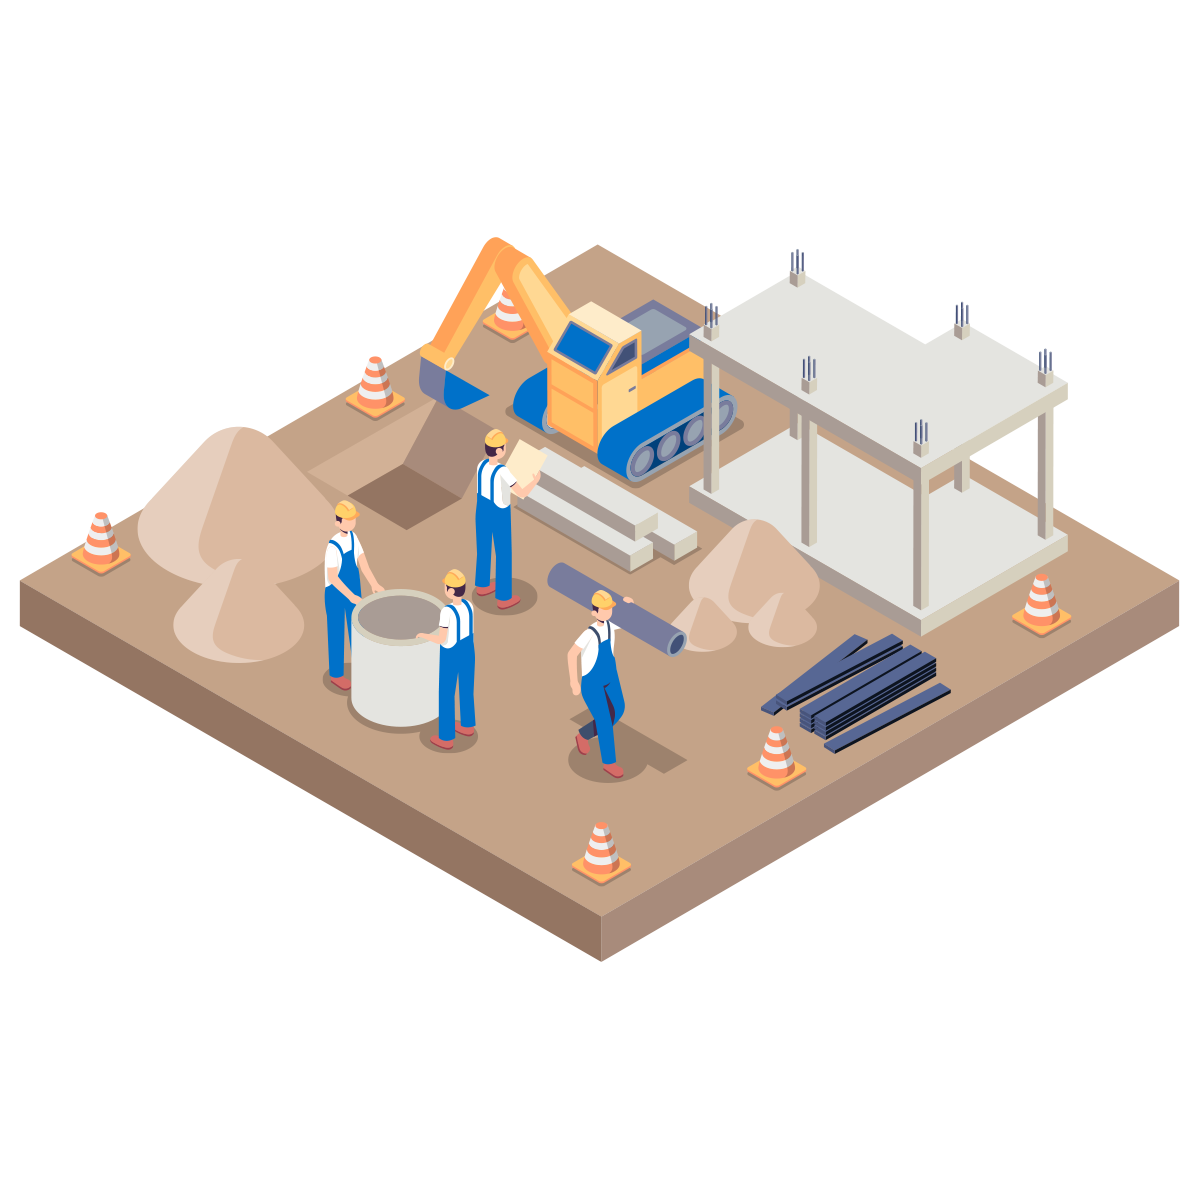 Services: Rohbau Bild - Isometrische Illustration von Bauarbeitern auf einer Baustelle, die einen Rohbau zusammenbauen | Services